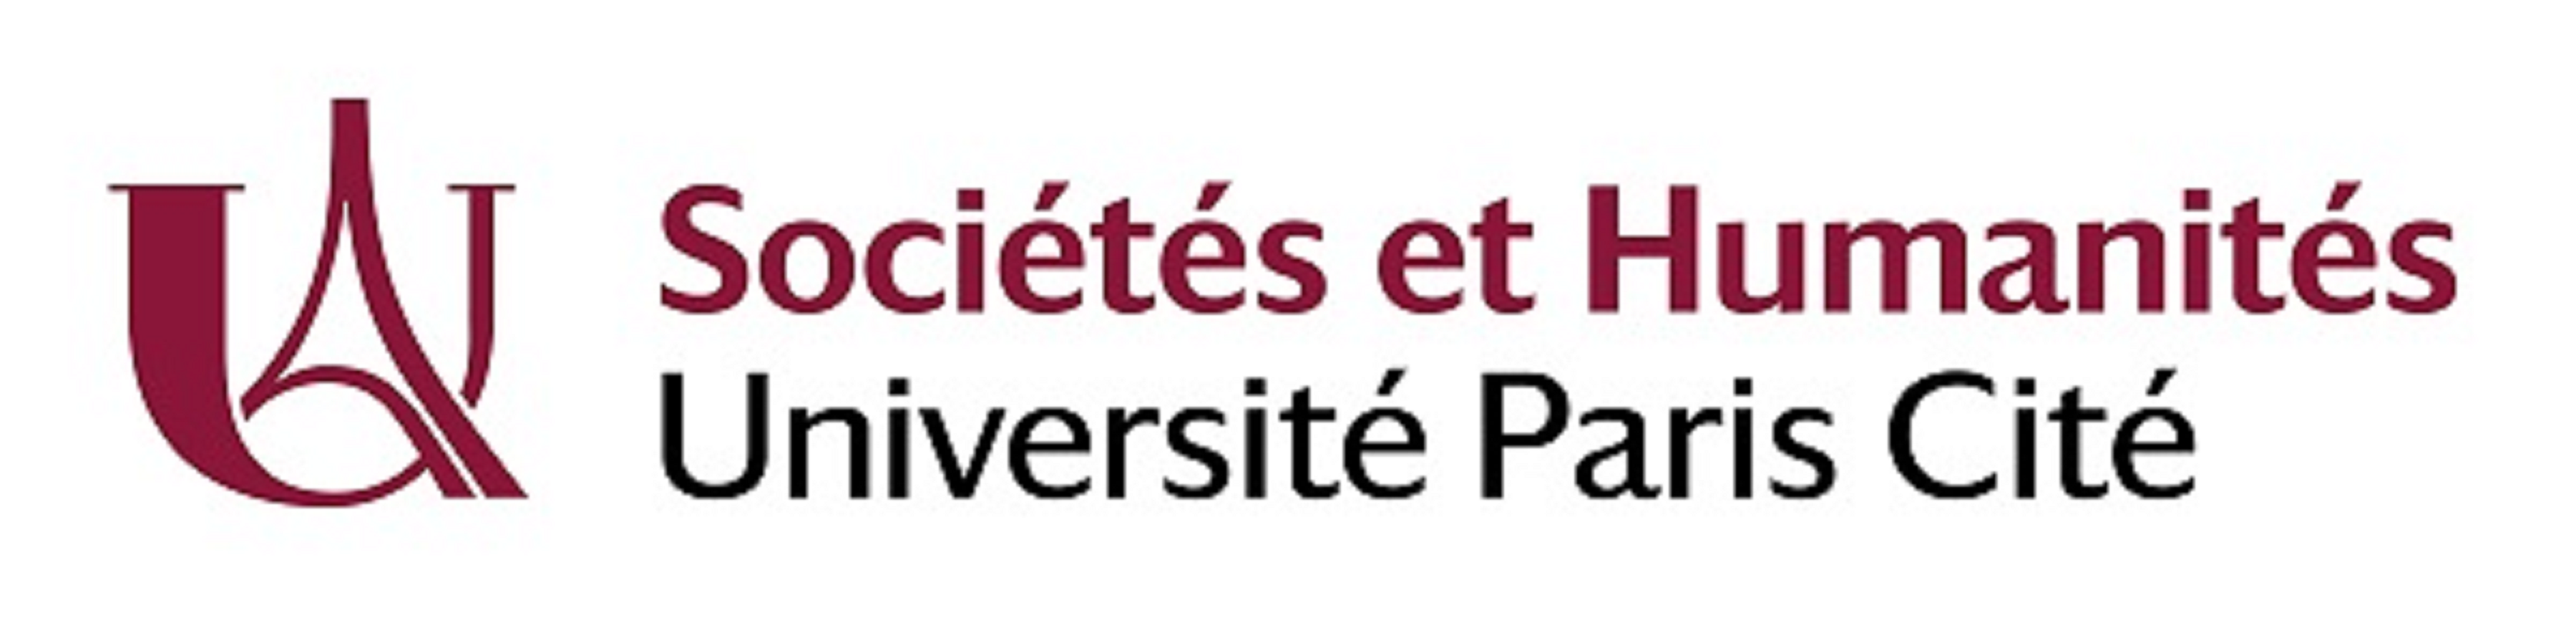 Faculté Sociétés et Humanités à l'Université Paris Cité